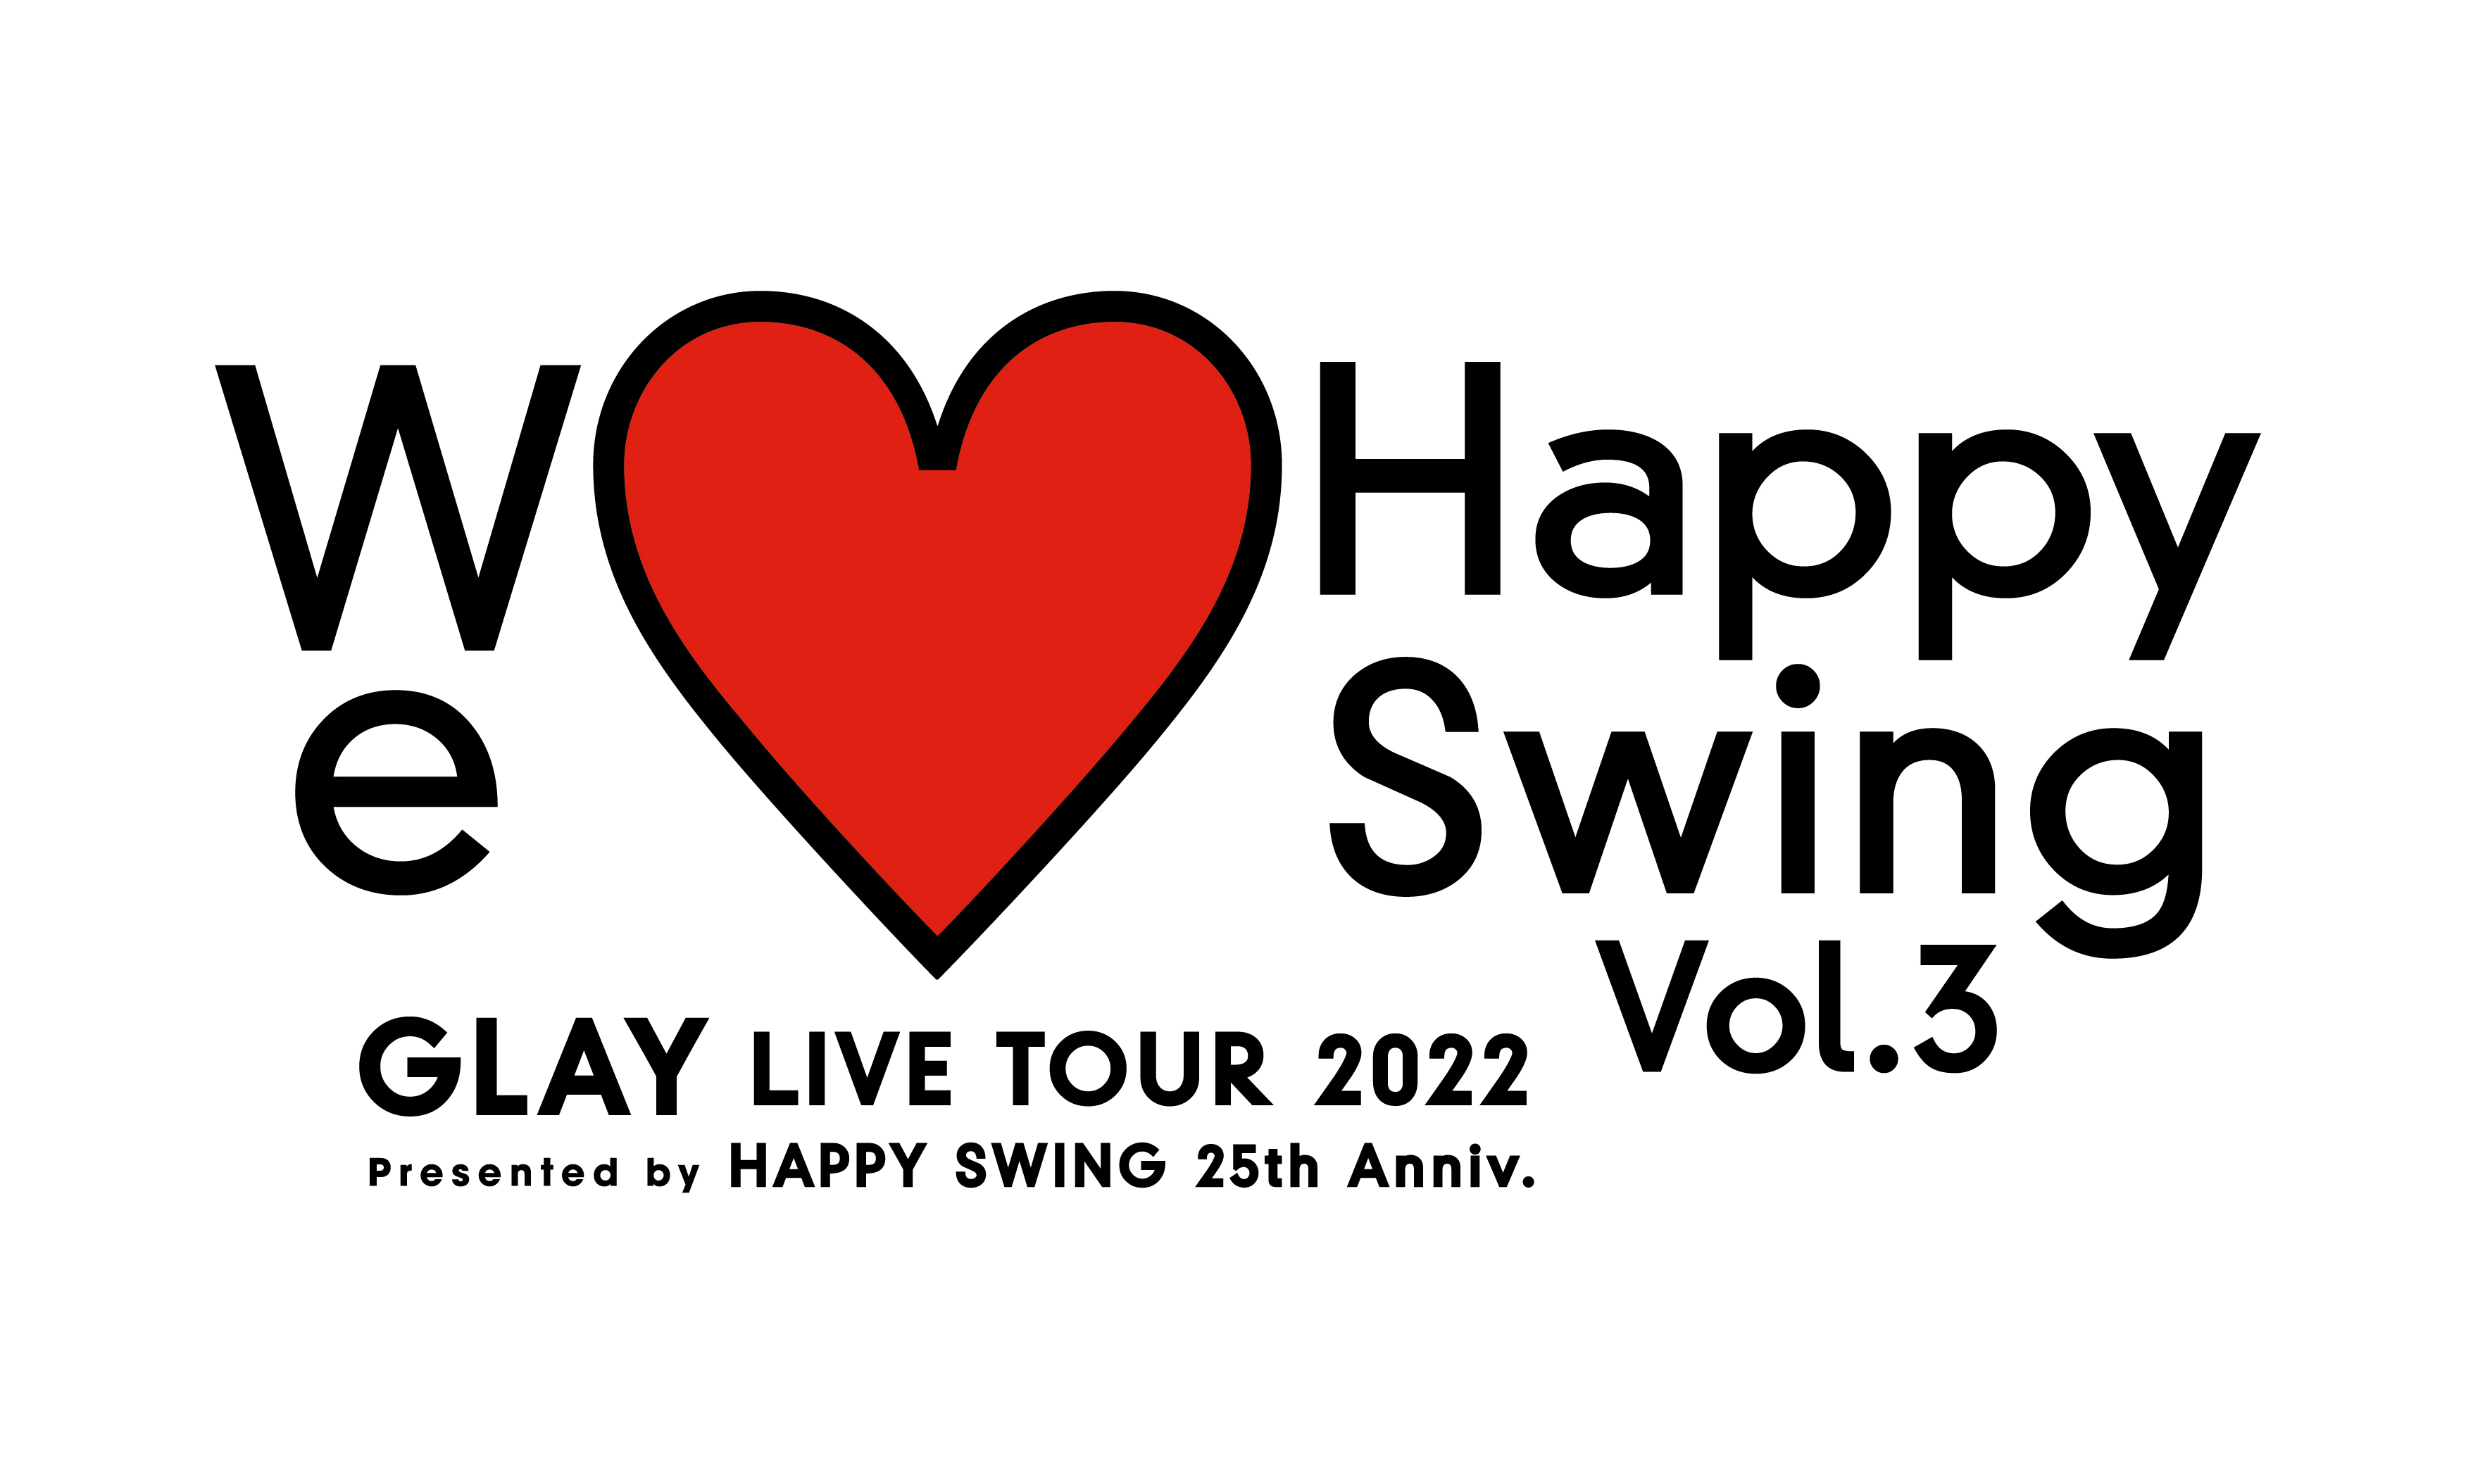 GLAYのオフィシャルファンクラブ「HAPPY SWING」の発足25周年を記念